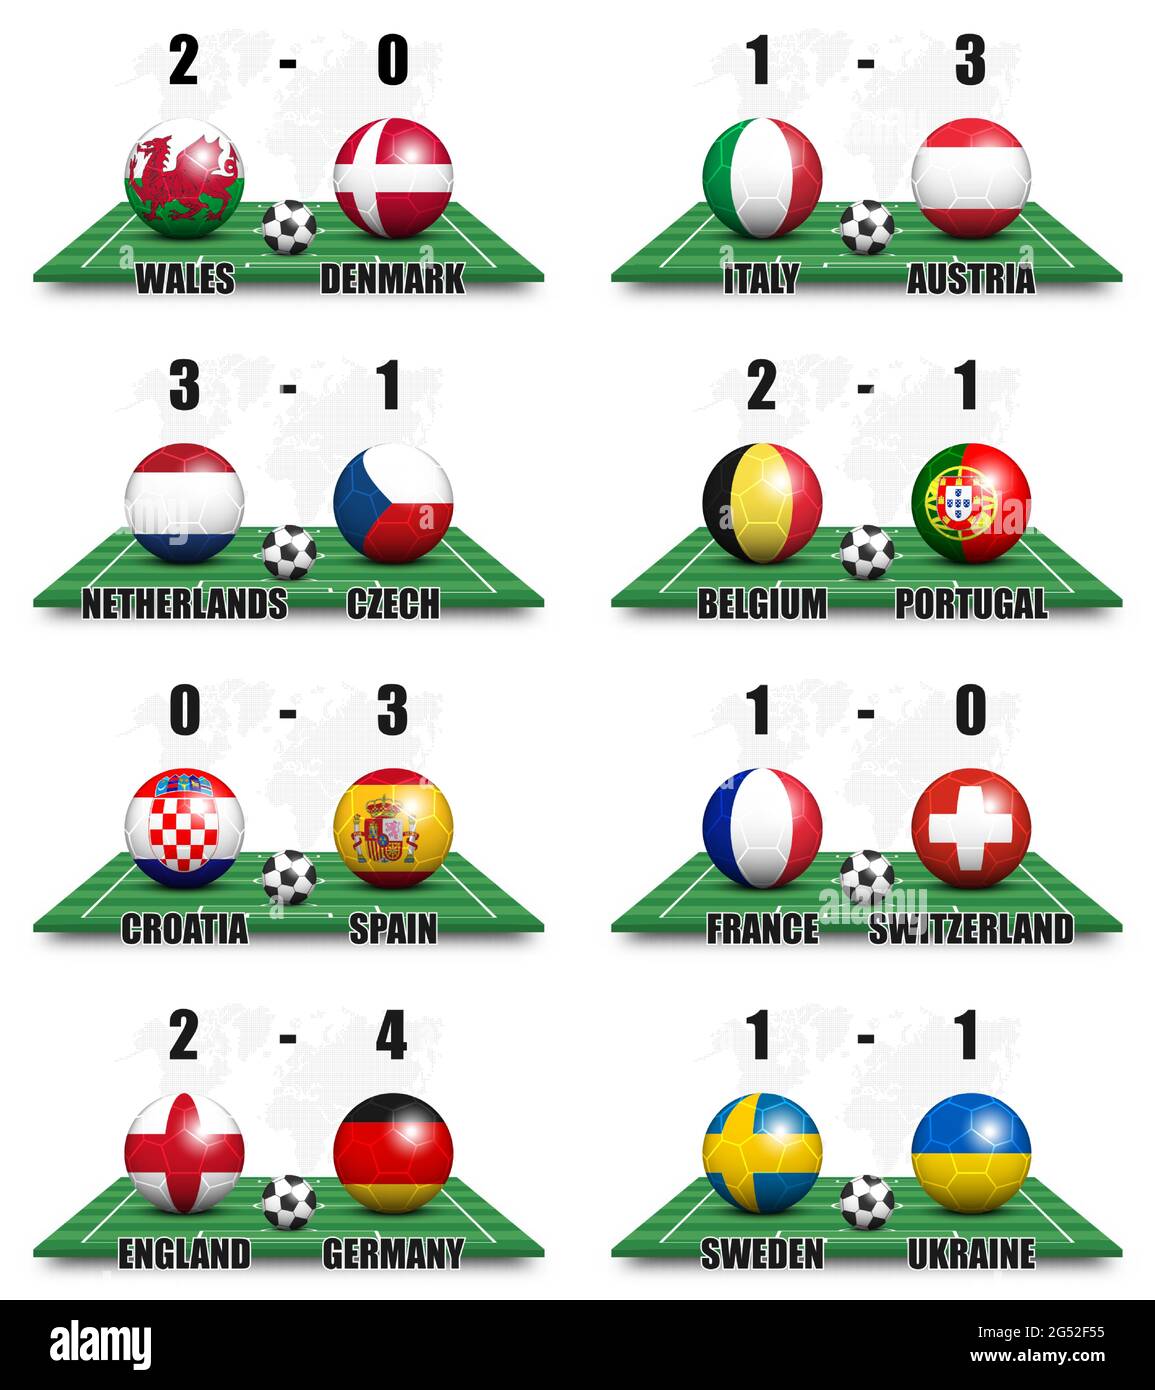 Runde der 16 Team-Turnier europäische Fußball-Cup-Meisterschaft . Ball mit Nationallandflagge auf perspektivische Ansicht Fußballfeld und Anzeigetafel . Wor Stock Vektor